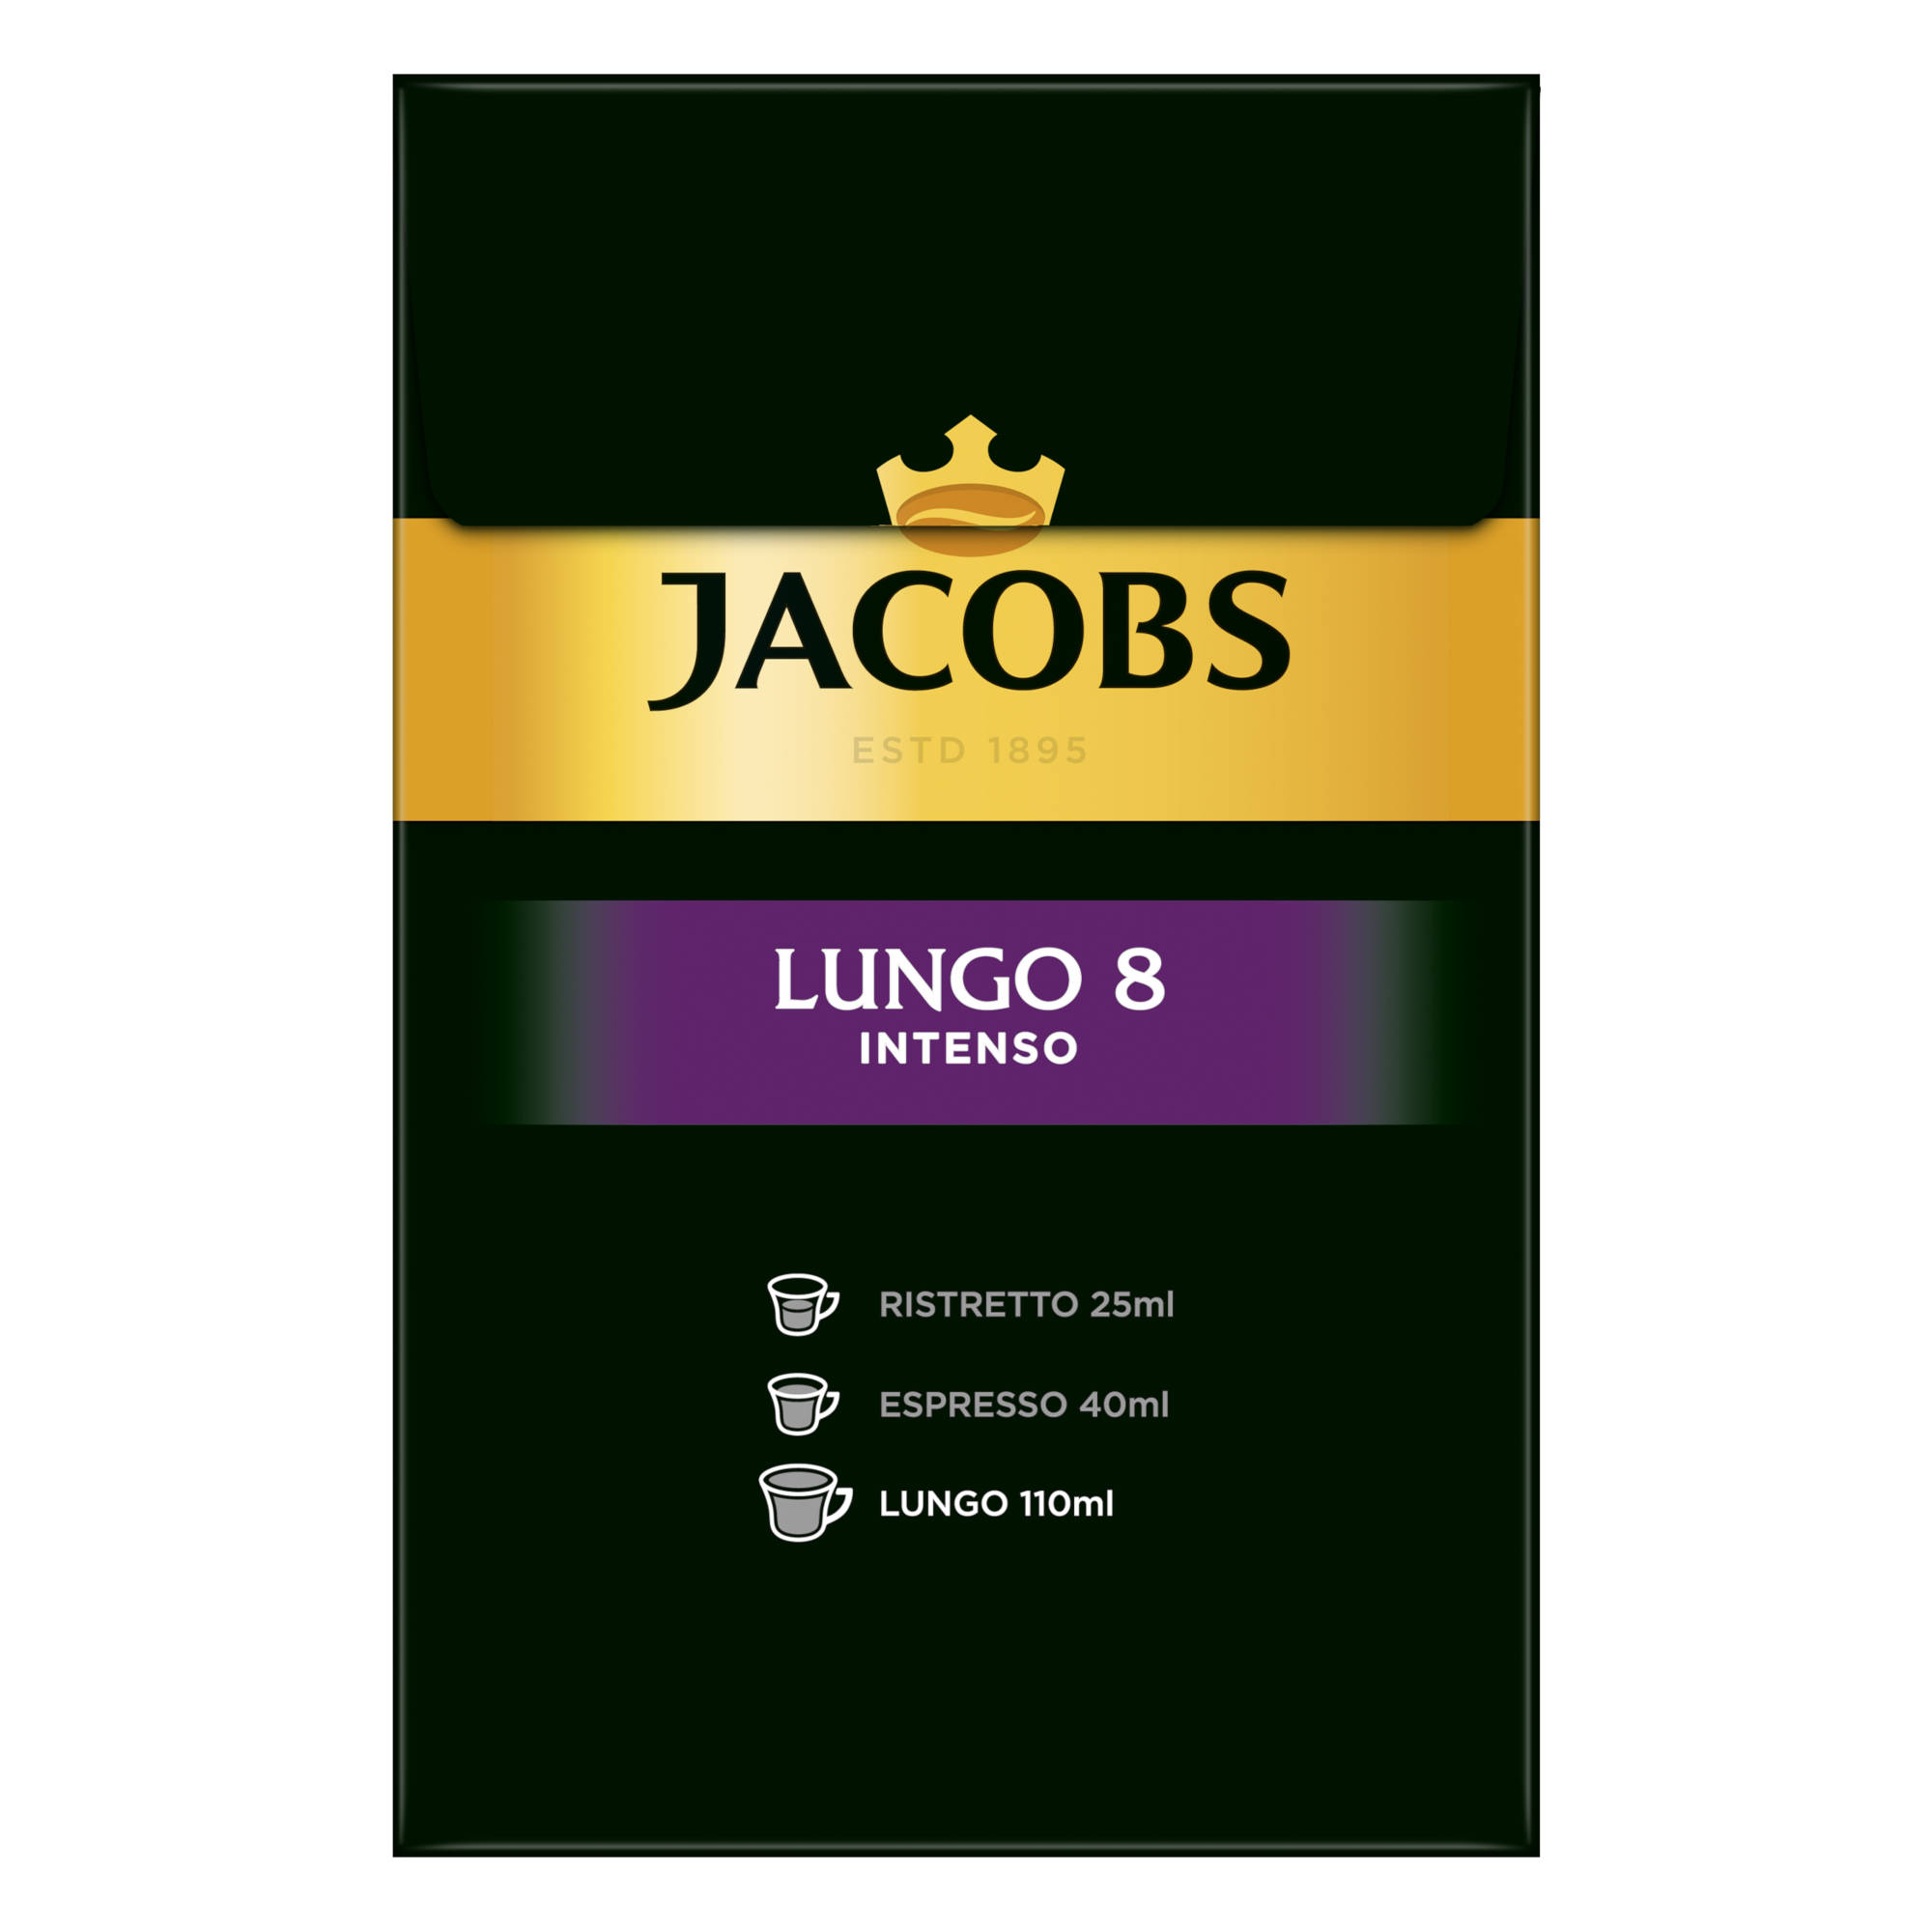 JACOBS Lungo 8 x XXL-Pack System) 5 40 Intenso (Nespresso Nespresso®* Kaffeekapseln kompatible